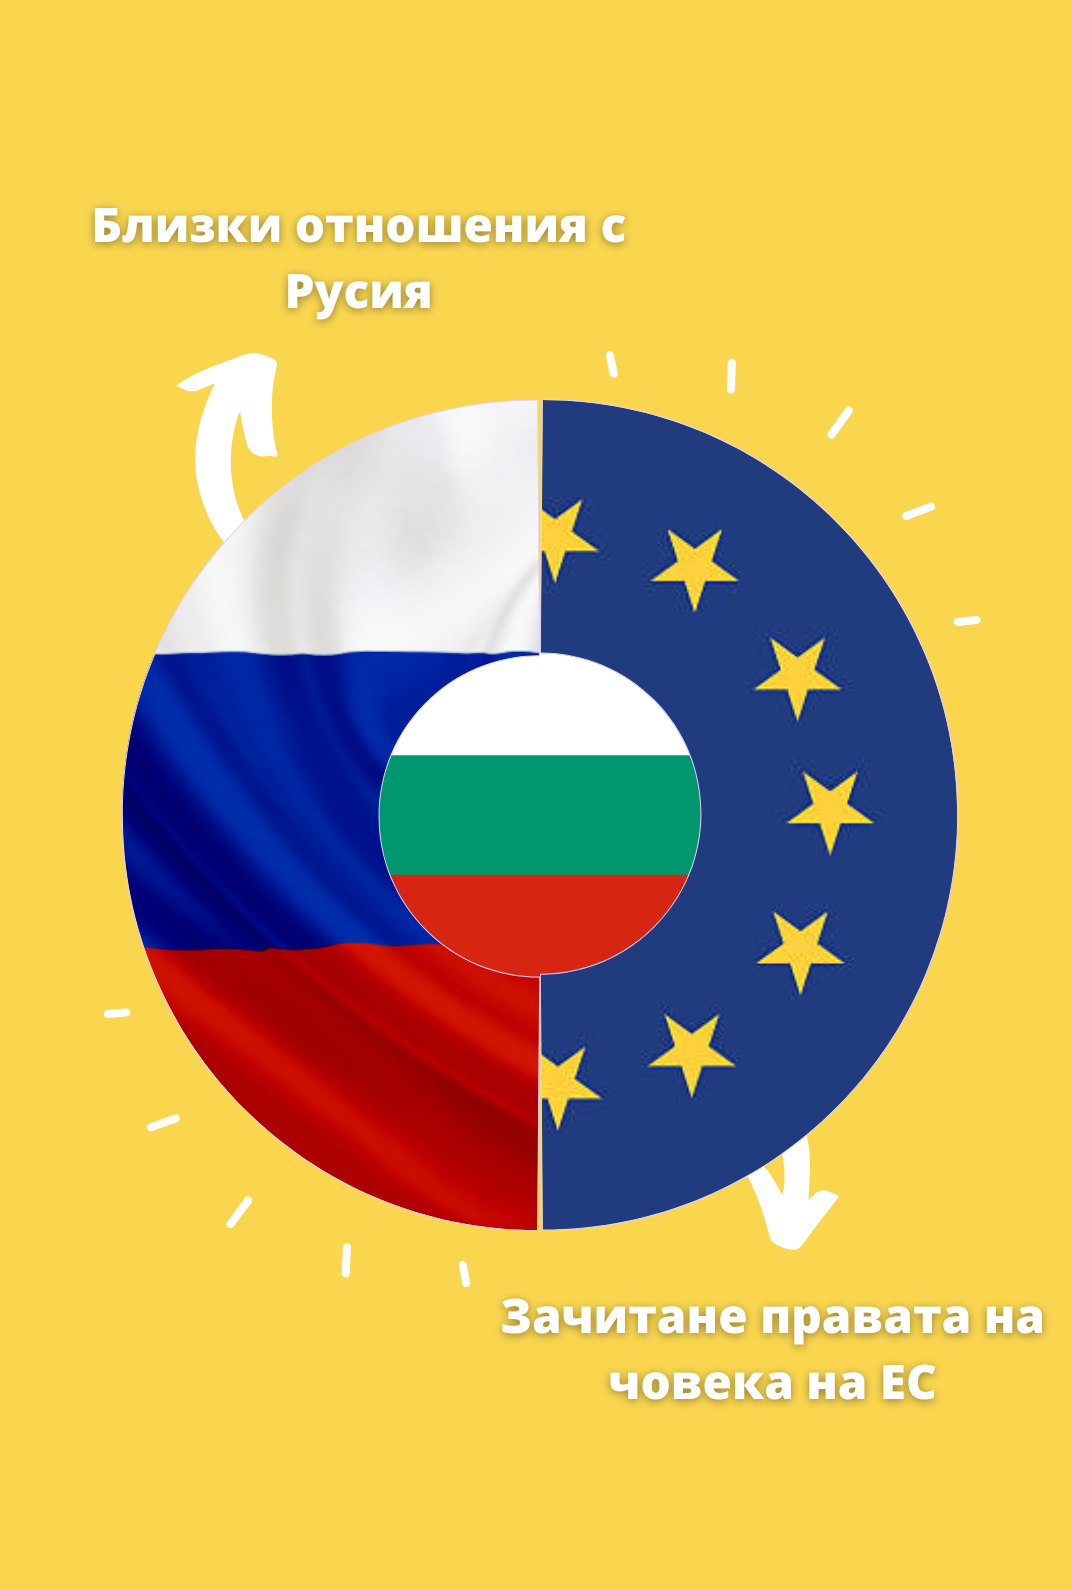 В геополитическо отношение България отново се намира между Русия и Европейския съюз